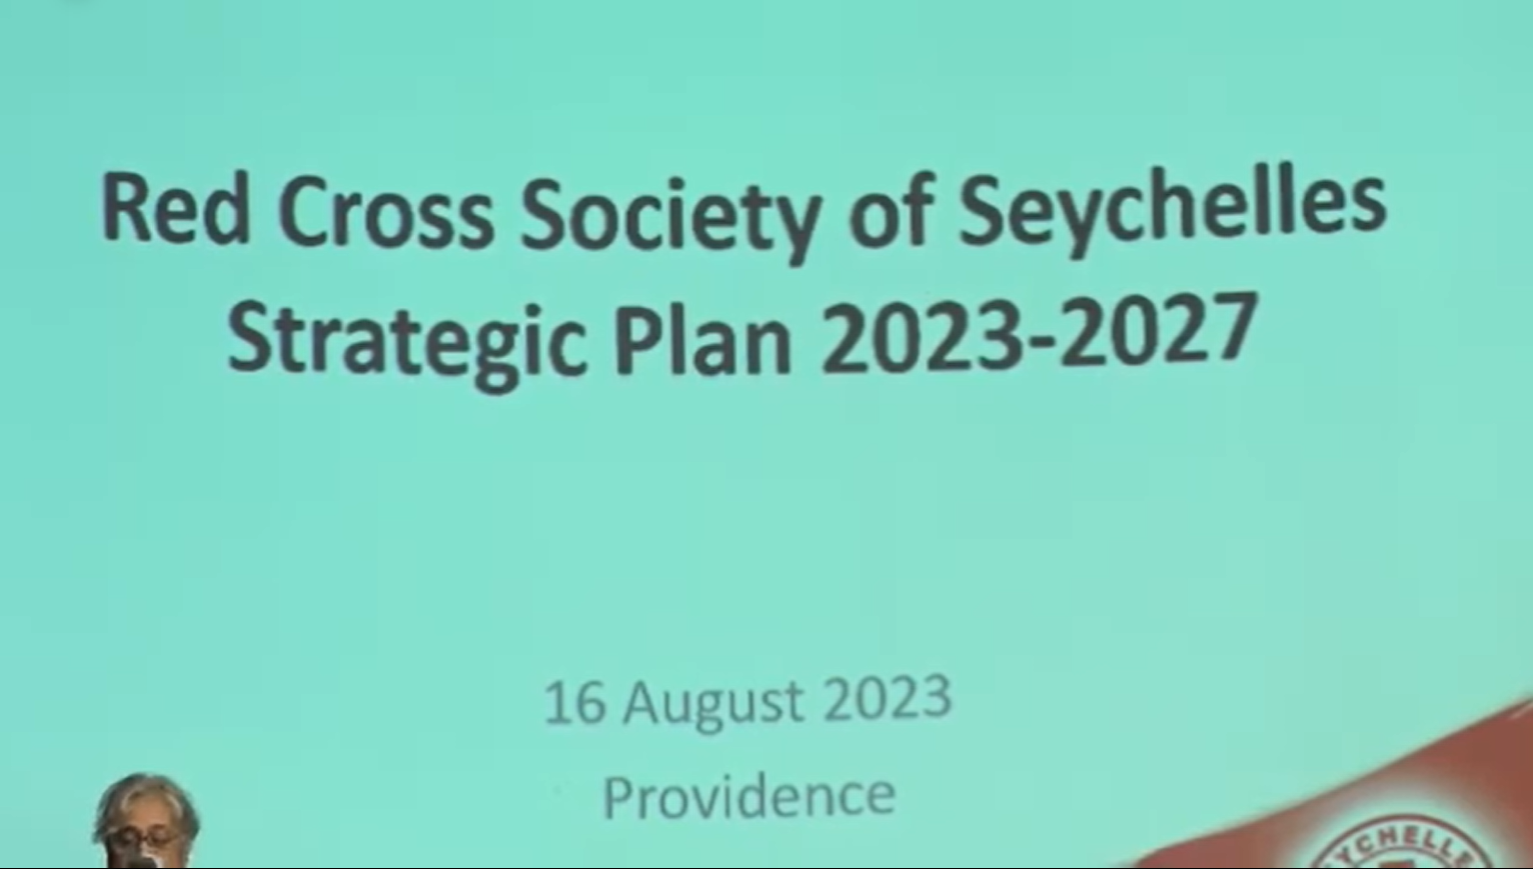 Sosyete lakrwa rouz Sesel in prezant son nouvo plan stratezik 2023-2027 avek son bann partener.